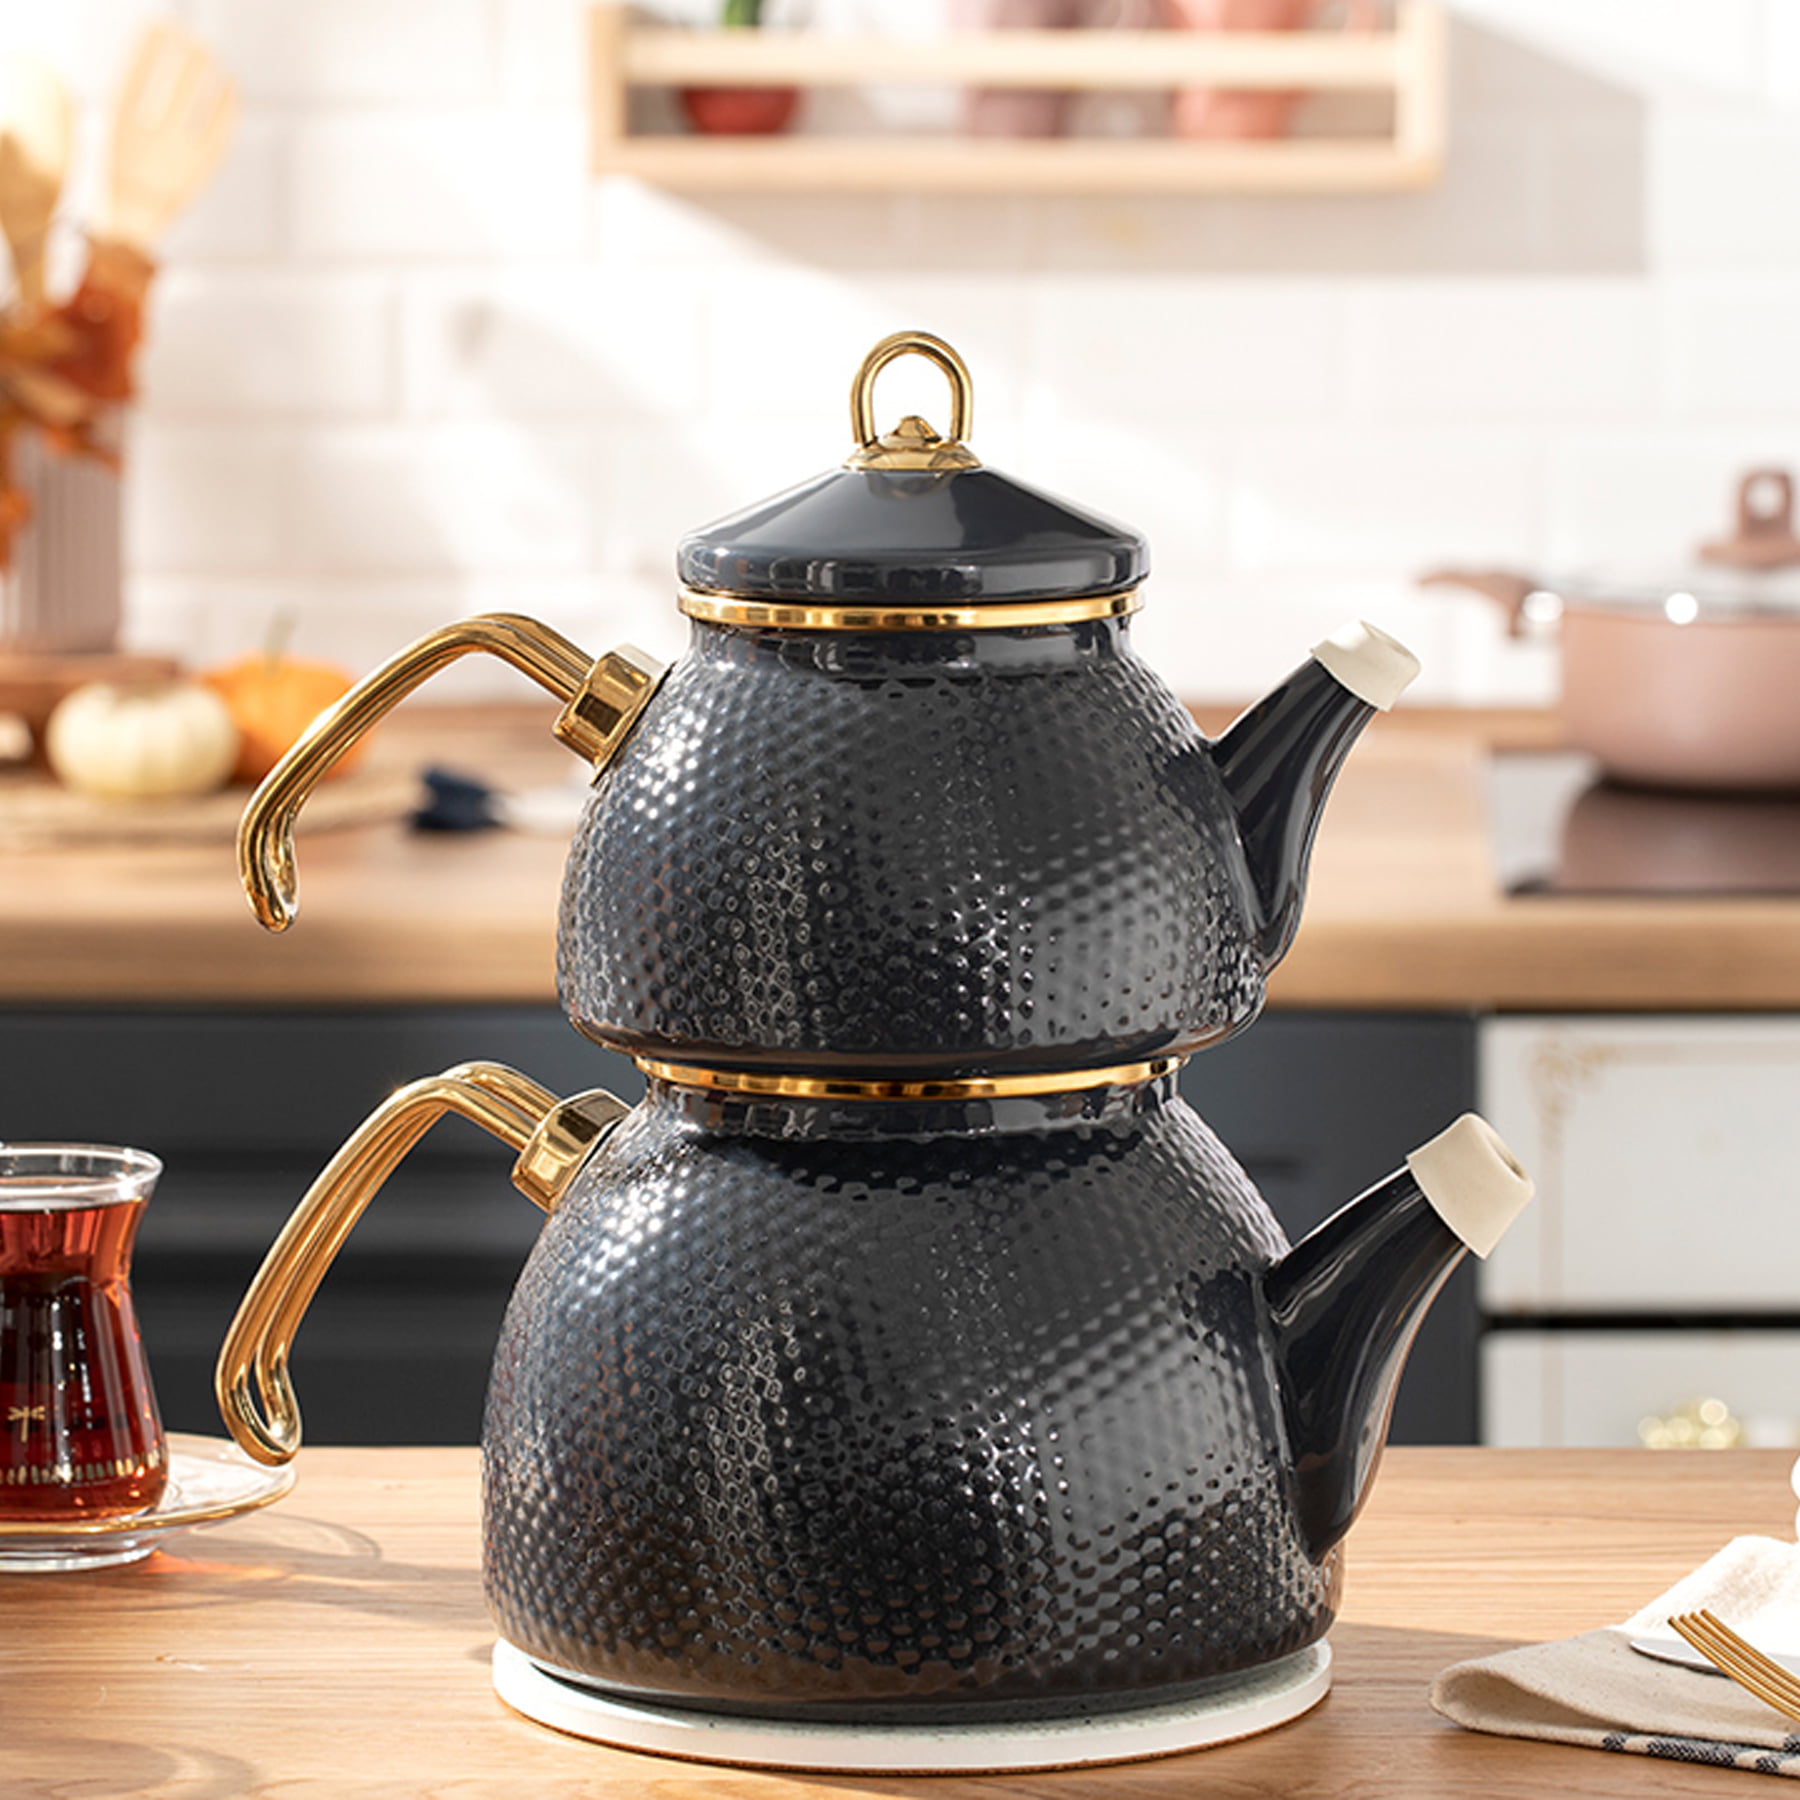 https://traditionalturk.com/wp-content/uploads/2021/12/anthracite-color-ceremony-enamel-turkish-tea-pot-kettle.jpg